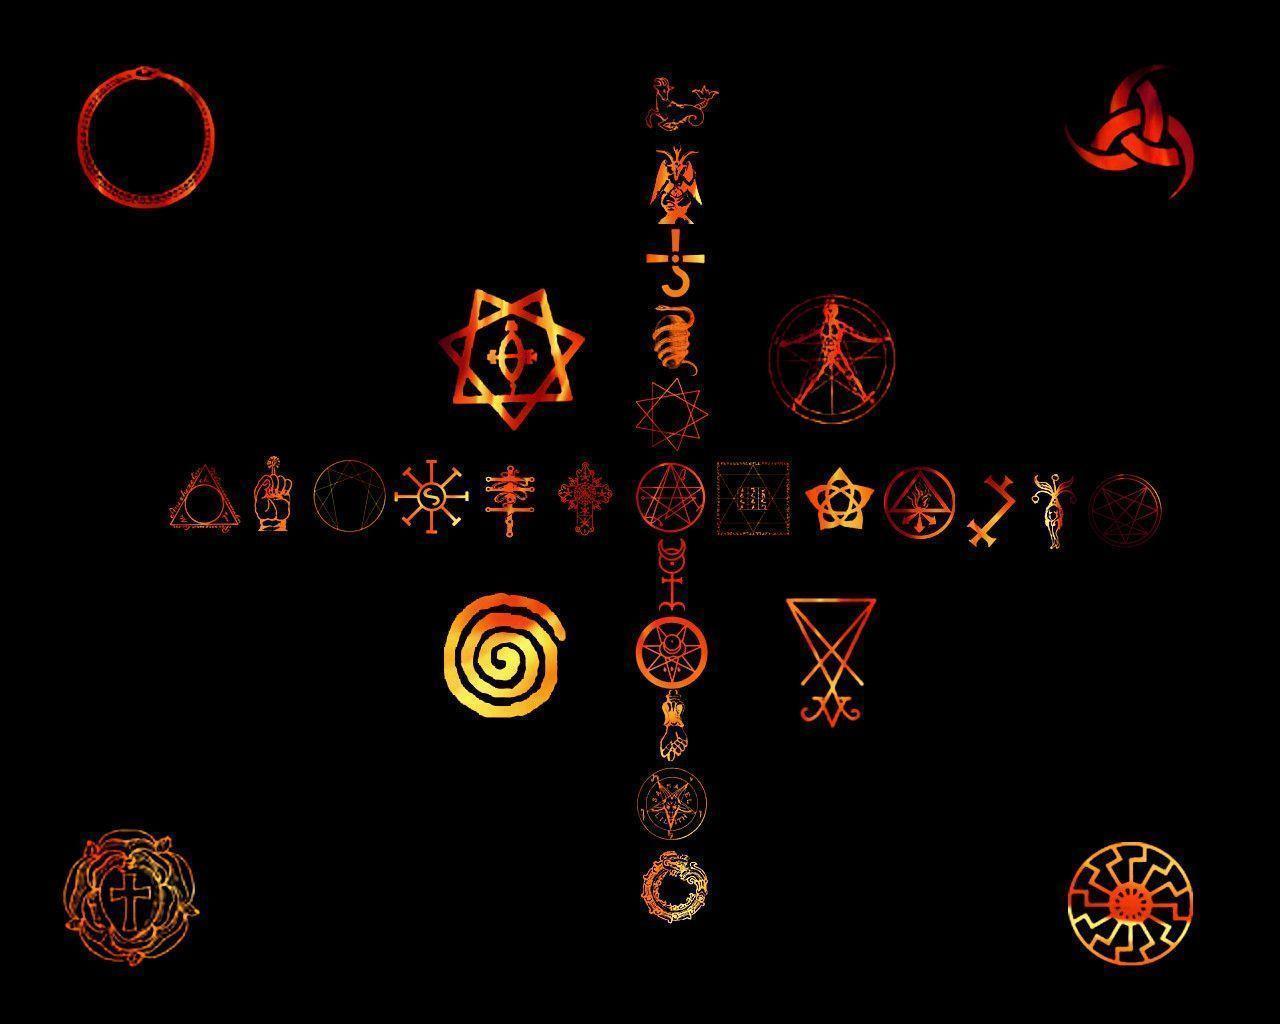 Occult Wallpaper